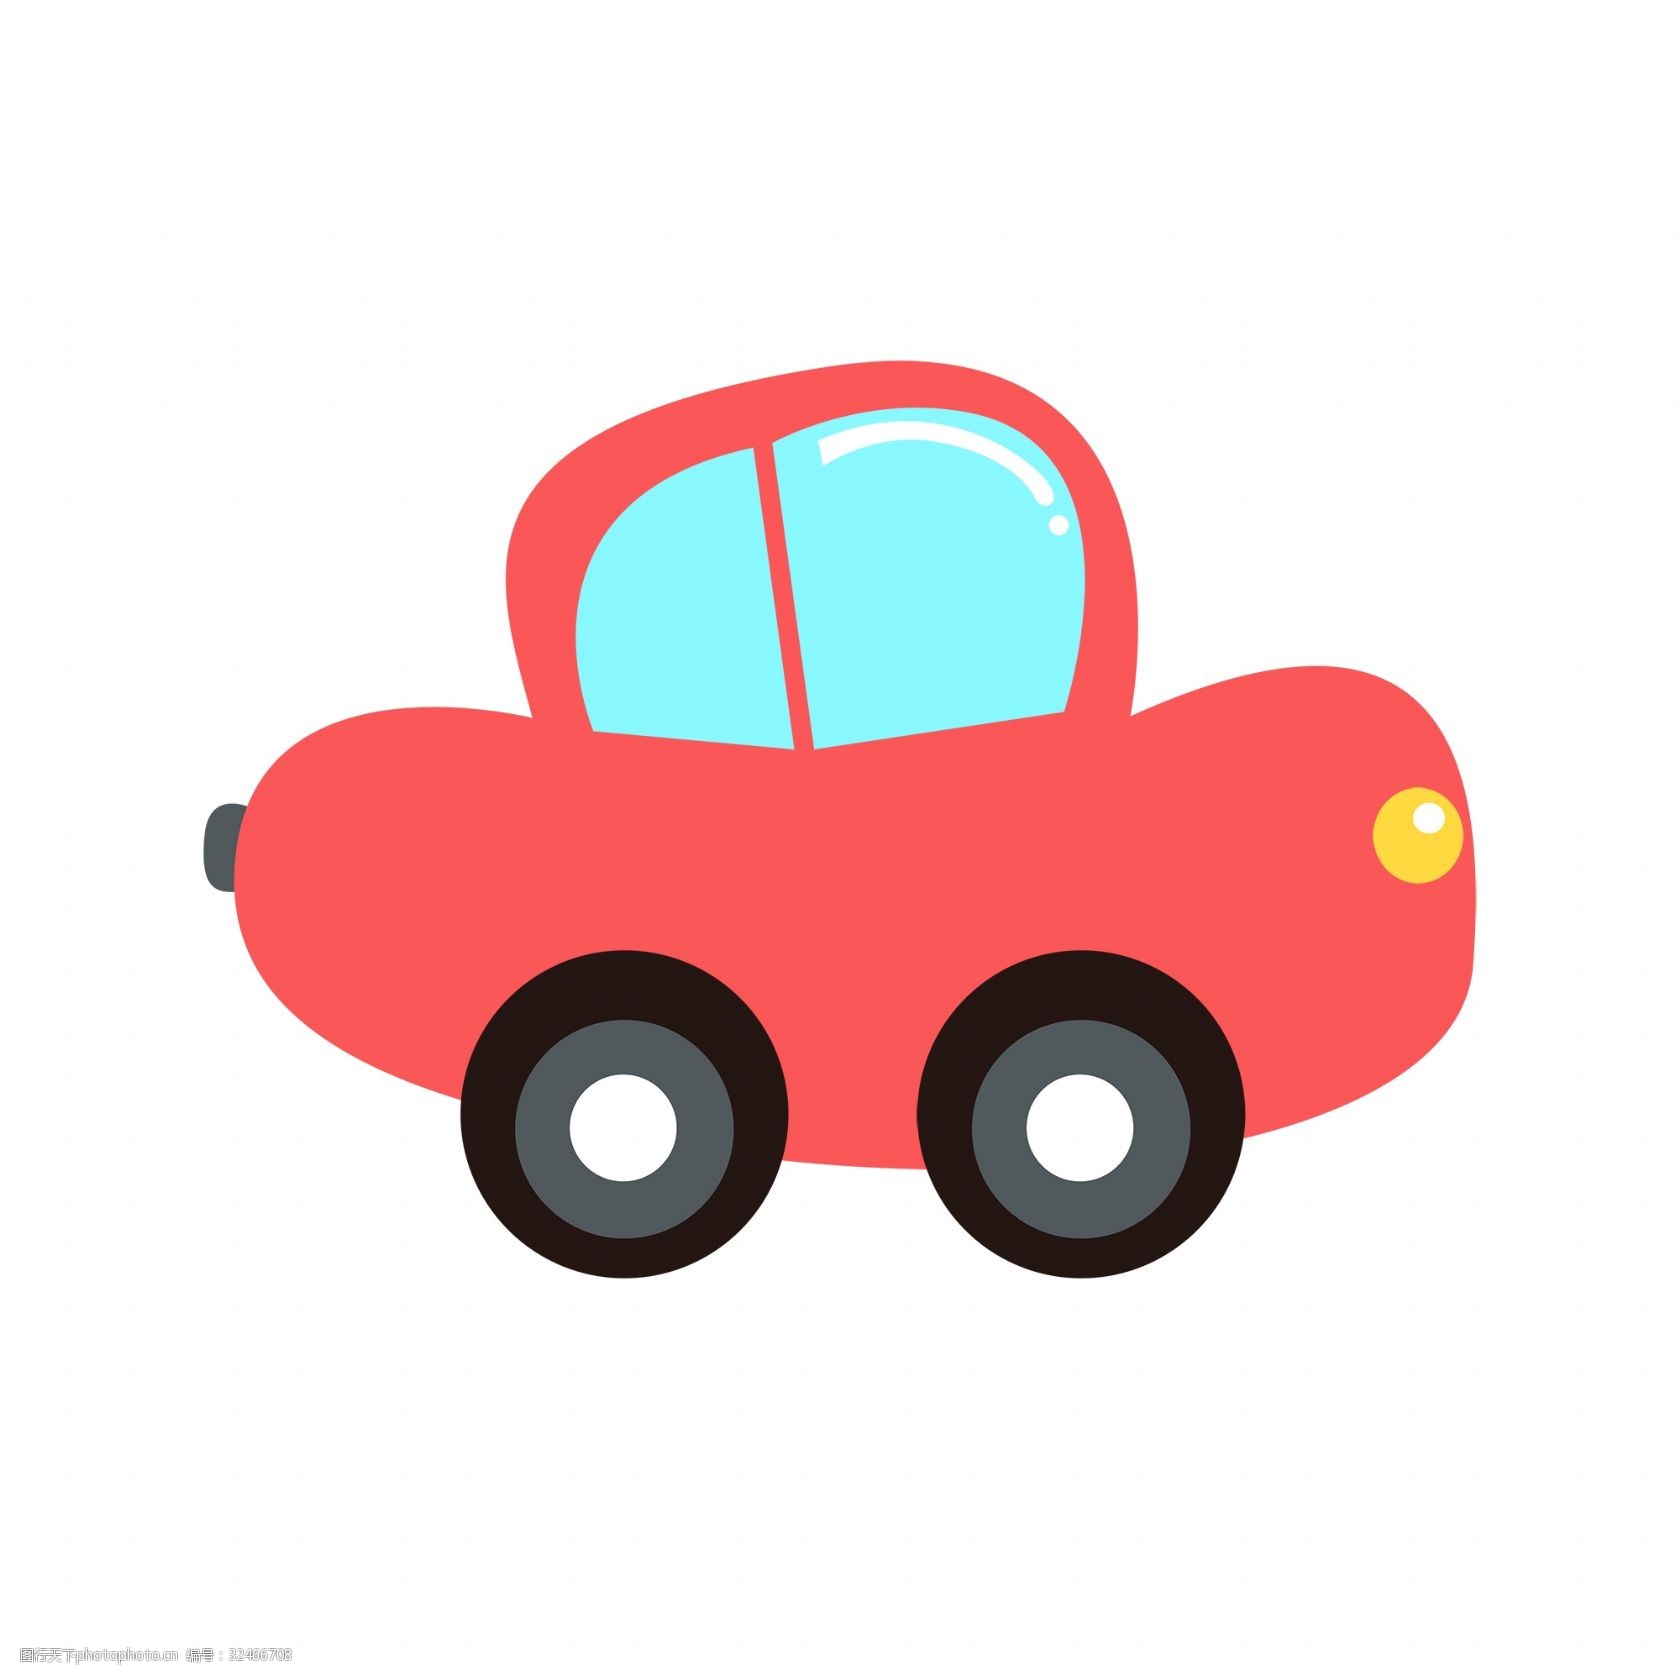 关键词:红色的玩具汽车插画 手绘汽车卡通的汽车 漂亮的汽车 红色的